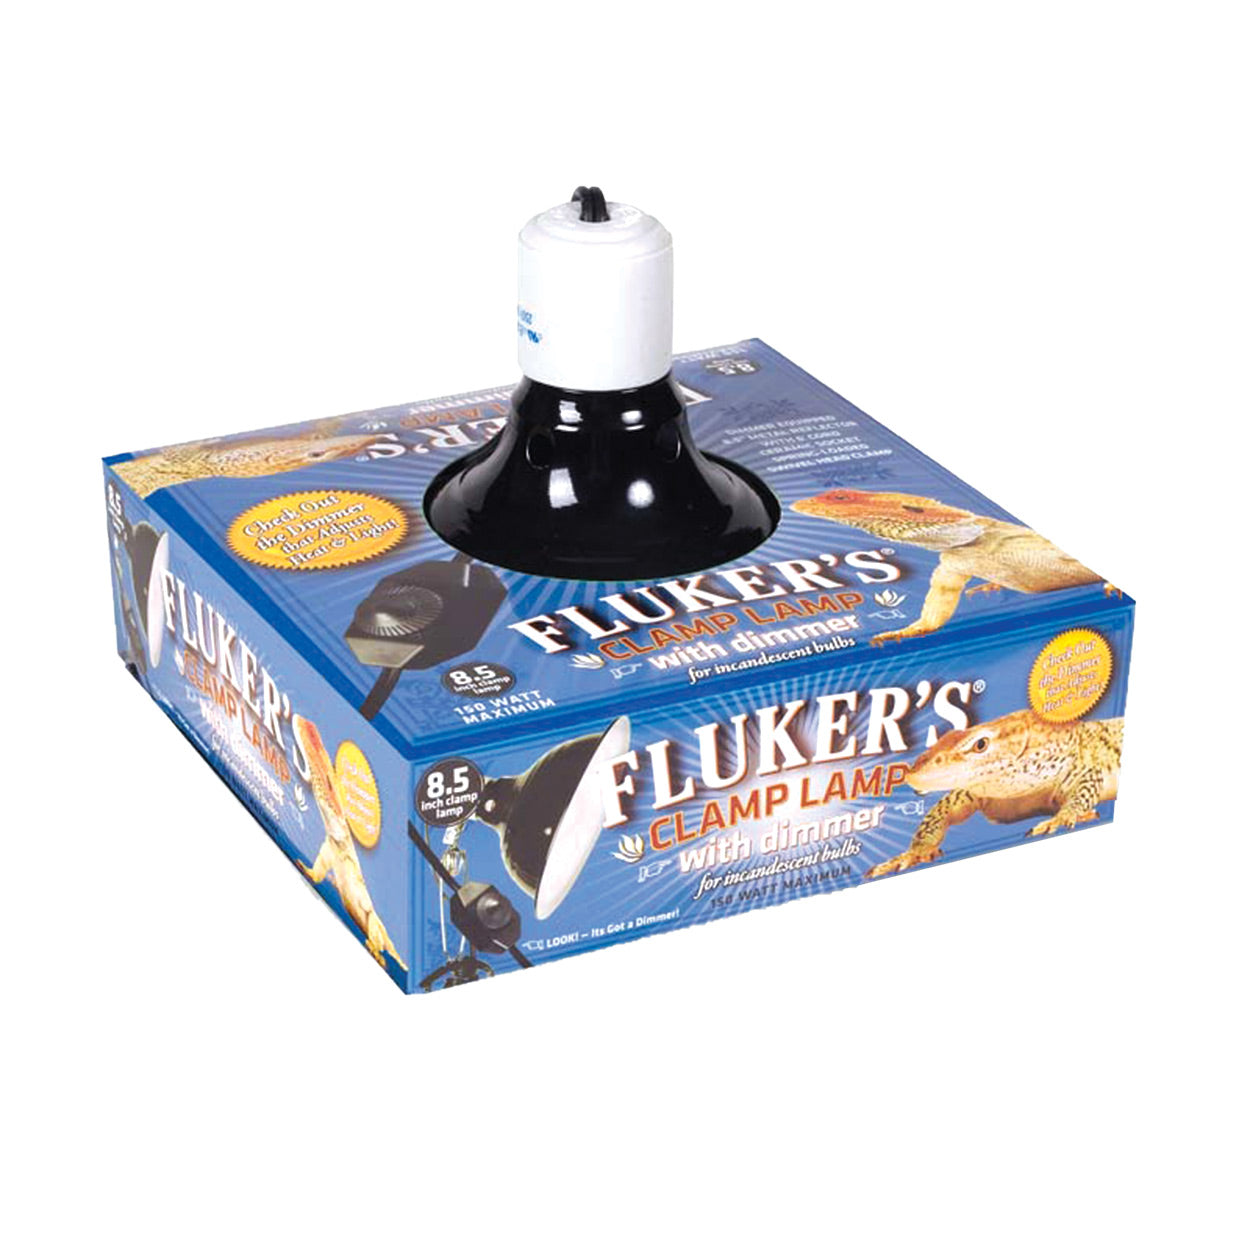 Fluker's Clamp Lamp with Dimmer - 8.5"